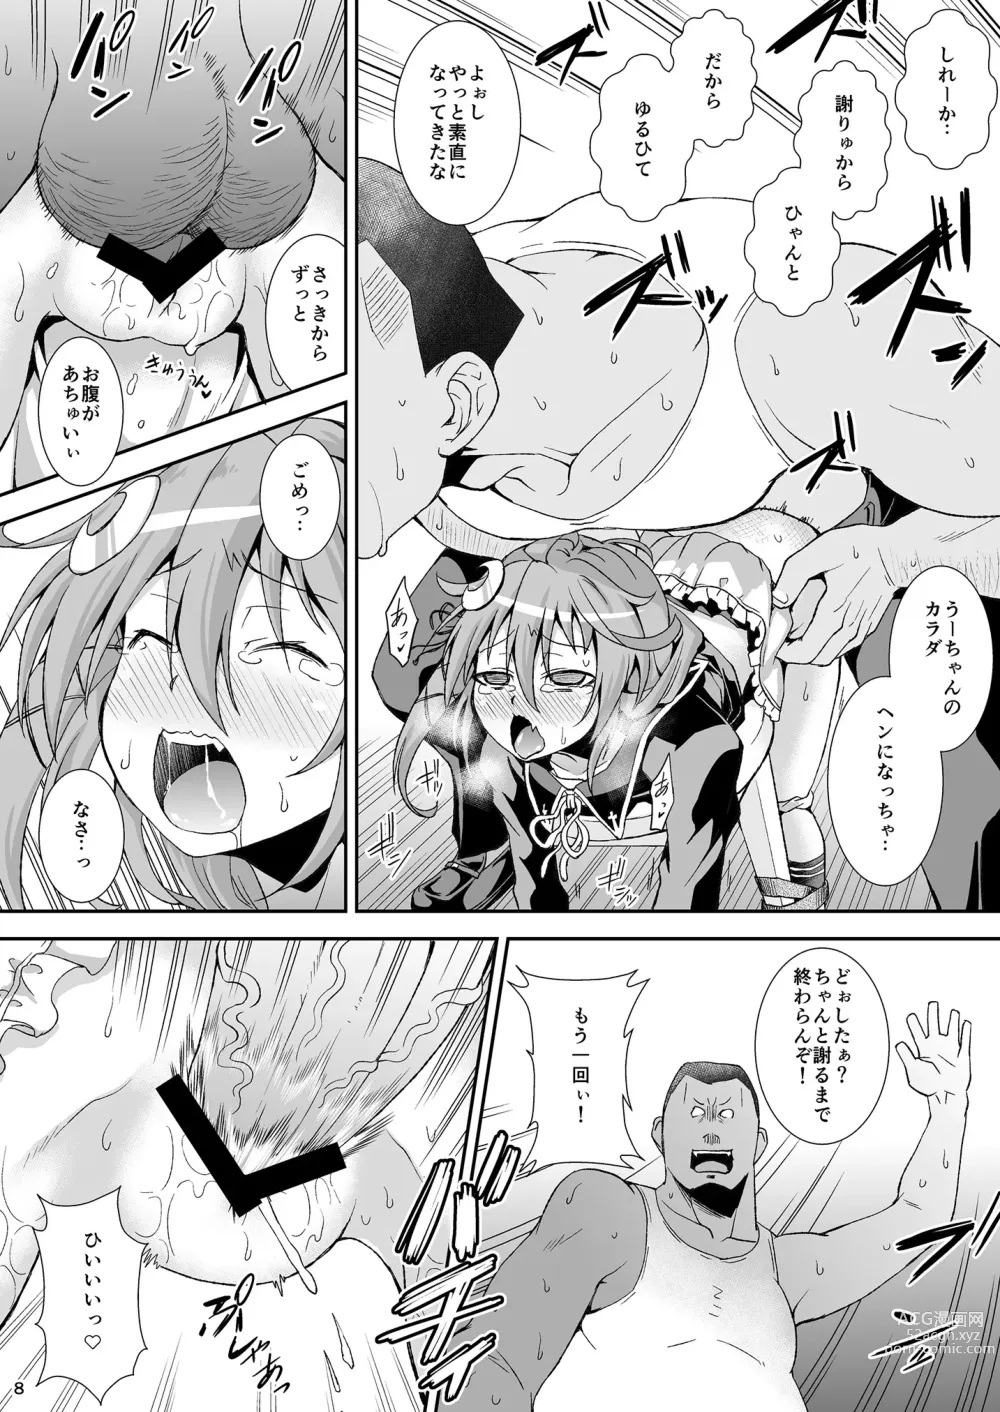 Page 7 of doujinshi U-chan, Gomennasai